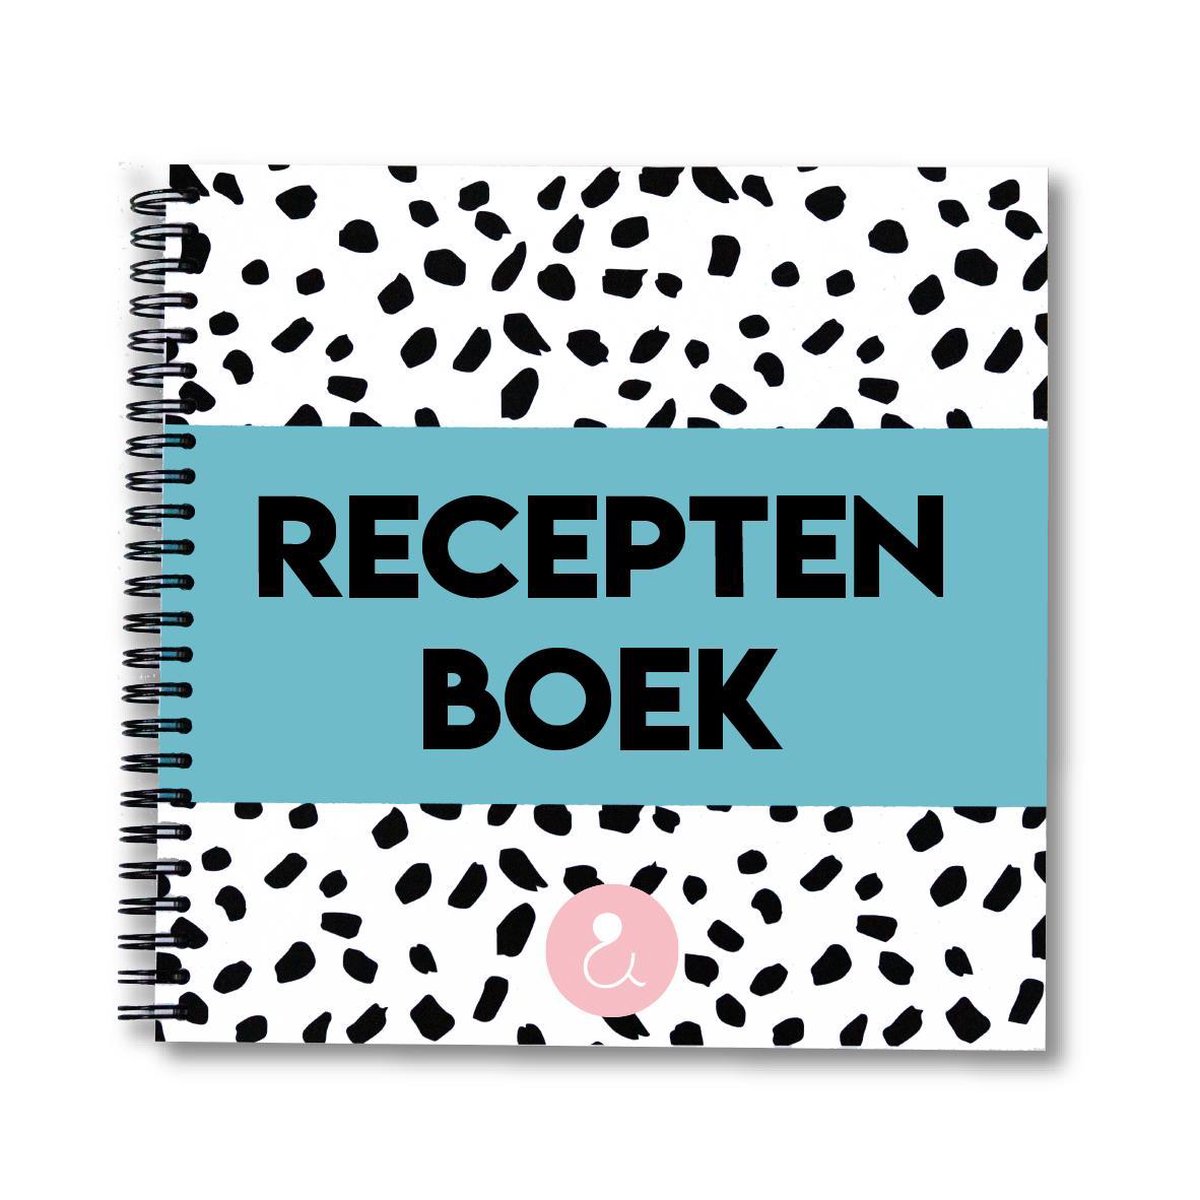 Receptenboek invulboek - Receptenboek verzamelboek - Recepten verzamelboek - Receptenboek lichtblauw - Studio Ins & Outs - Studio Ins & Outs